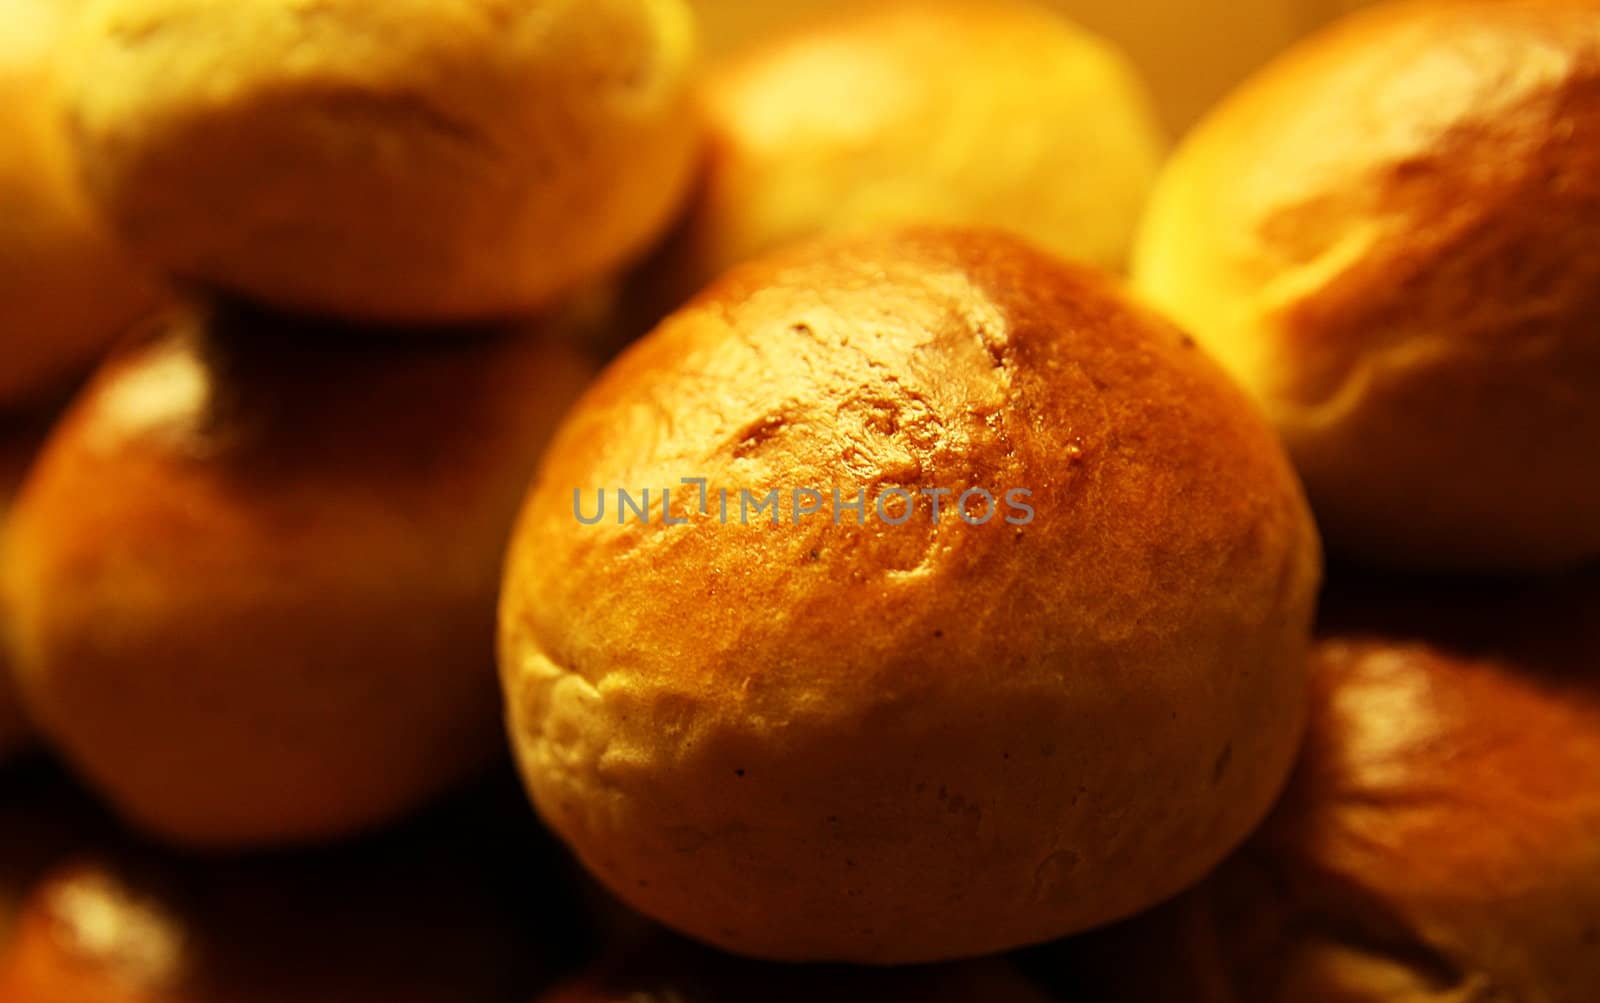 Freshly baked buns by sundaune